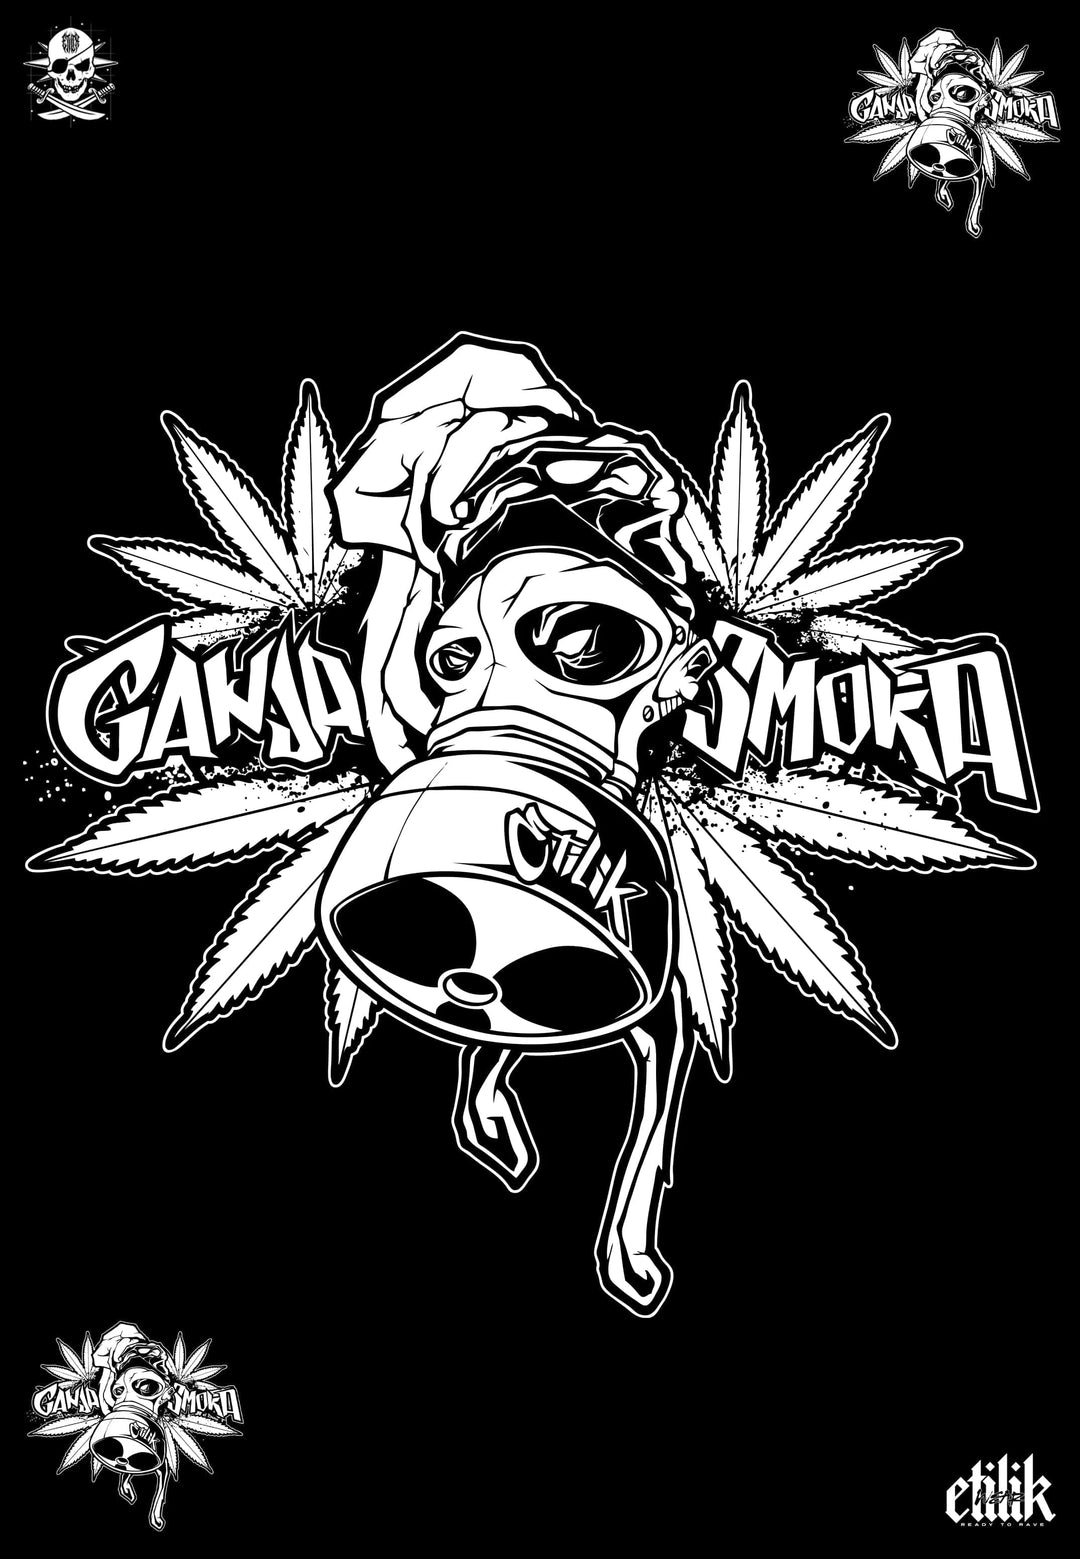 Ganja Smoka - T-shirt